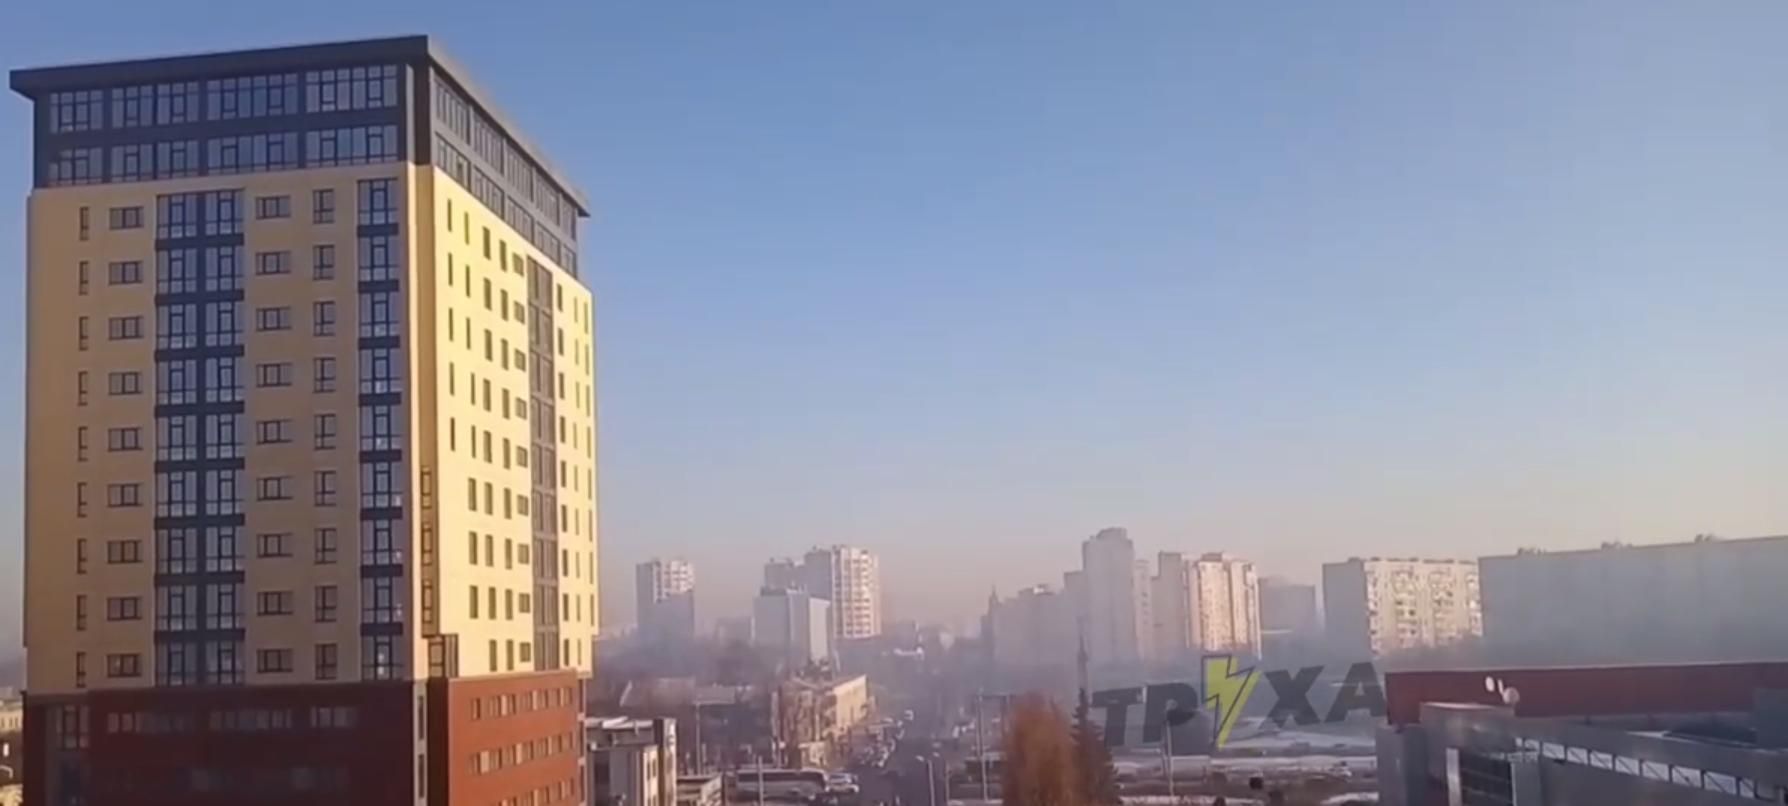 Харьков окутал густой смог: горожане жалуются на проблемы с дыханием